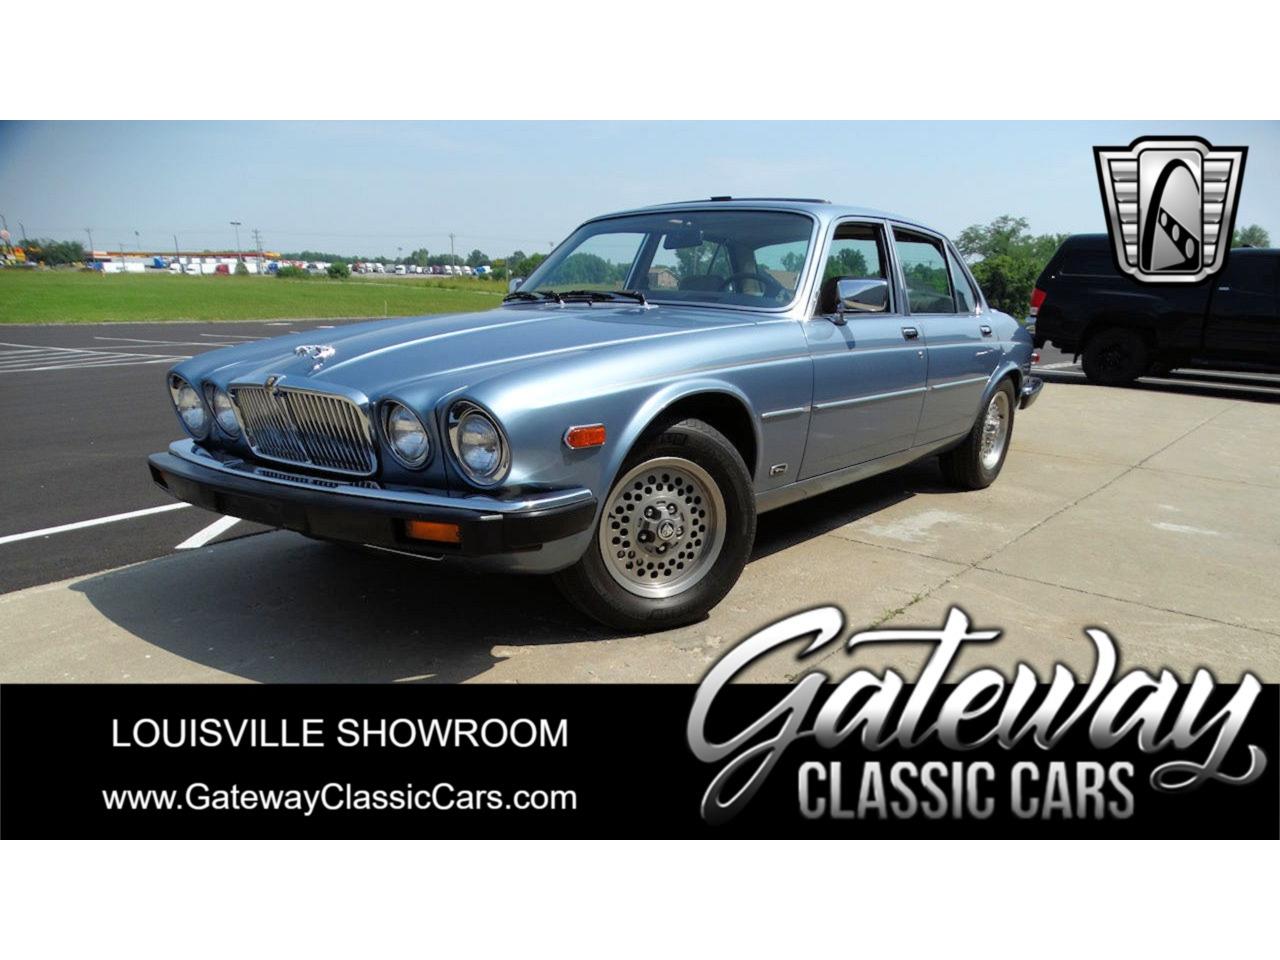 For Sale: 1987 Jaguar XJ6 in O'Fallon, Illinois for sale in O Fallon, IL